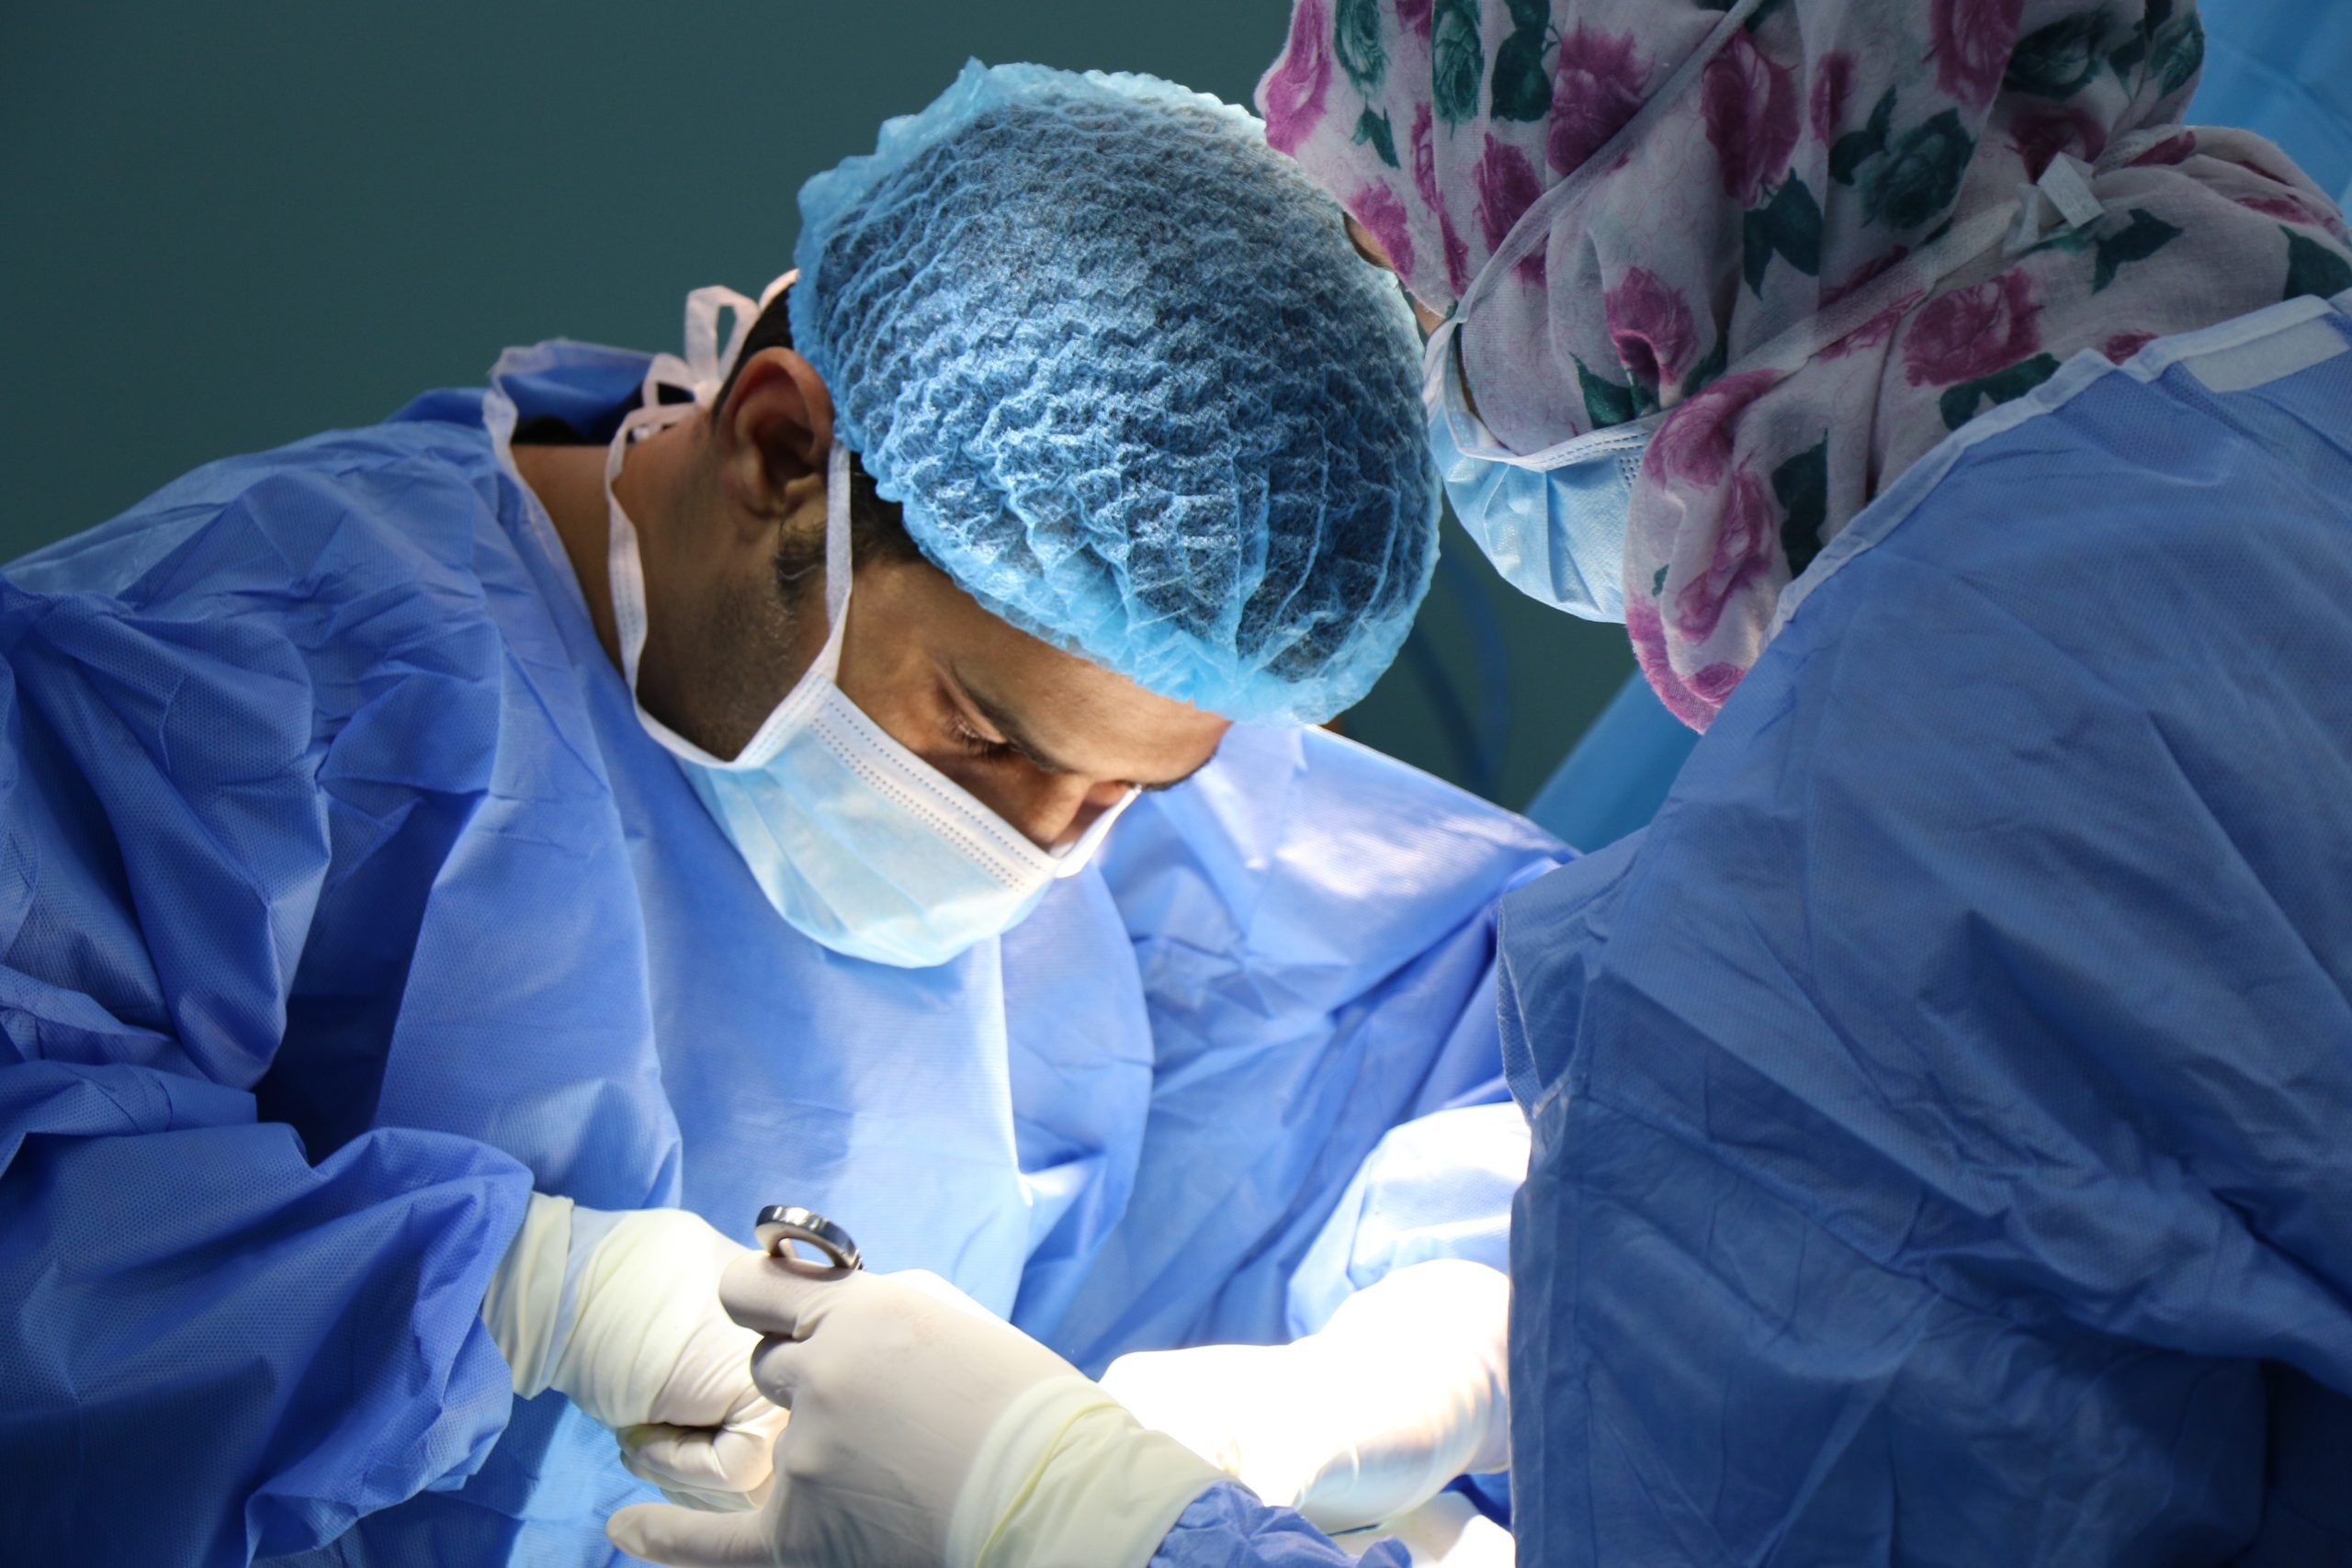 Covid riduce interventi chirurgici: in Piemonte attività scesa del 50%